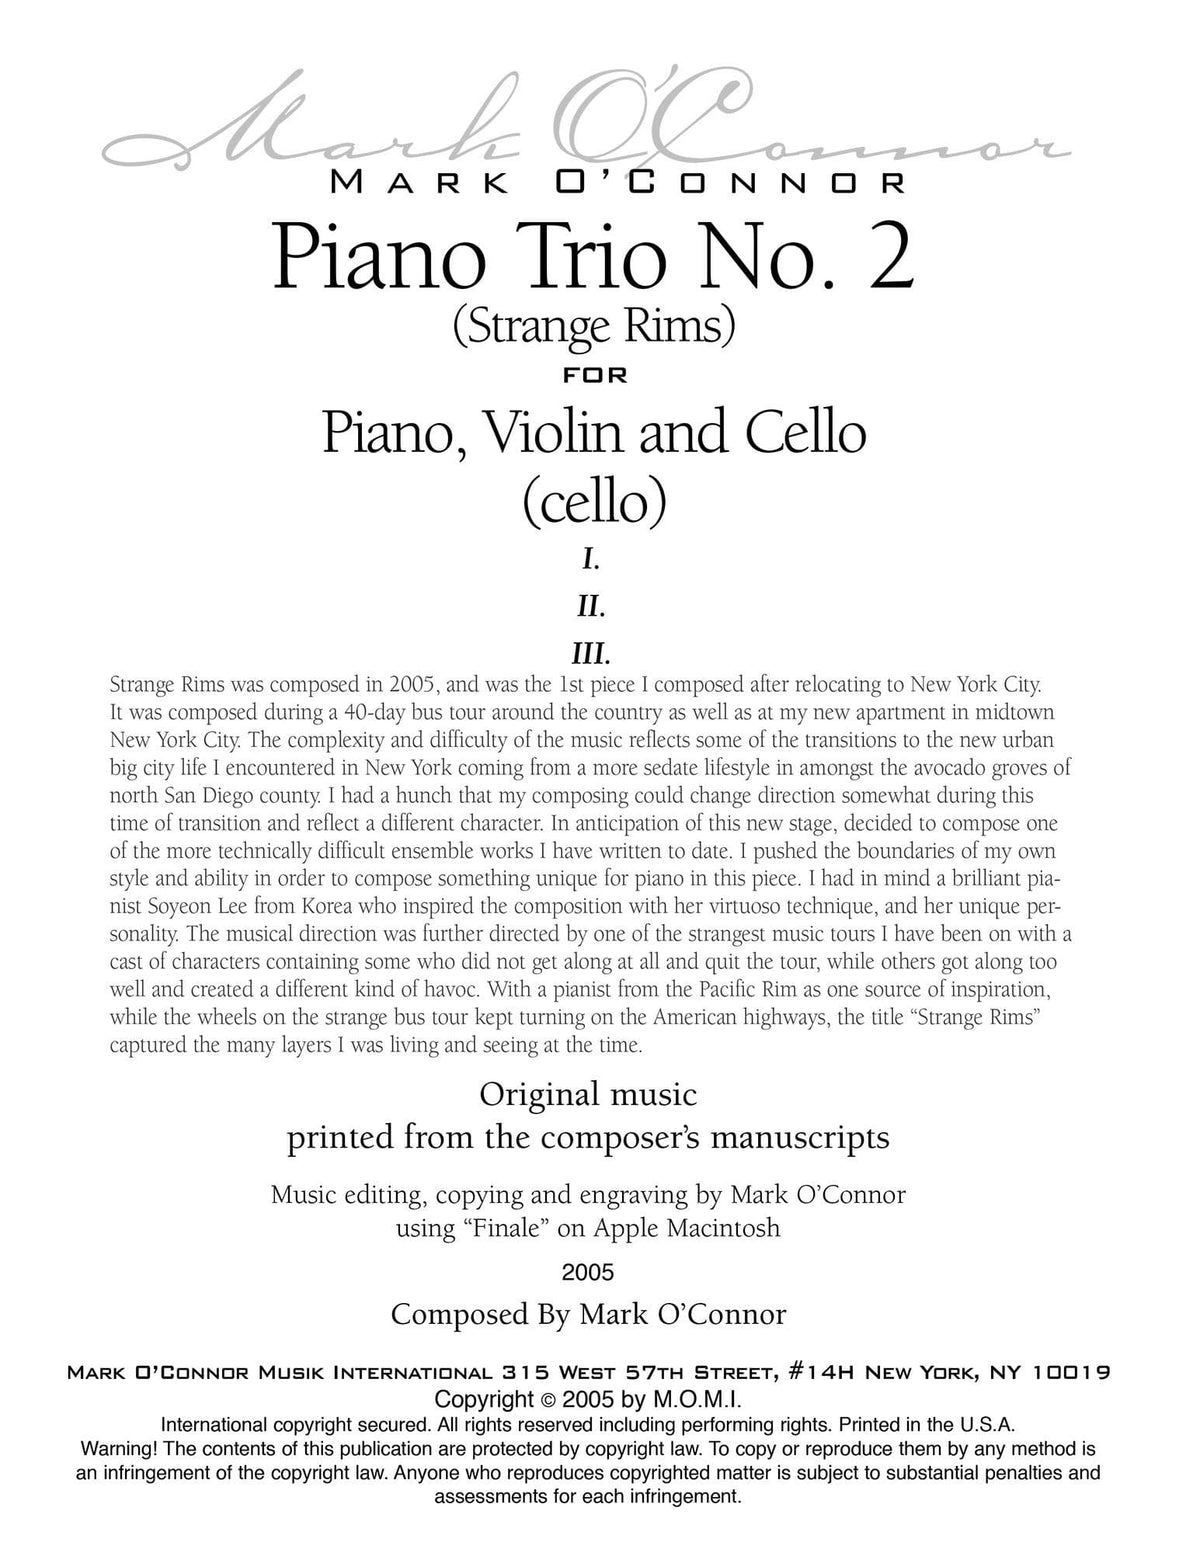 O'Connor, Mark - Piano Trio No. 2 (Strange Rims) for Piano, Violin, and Cello - Cello - Digital Download